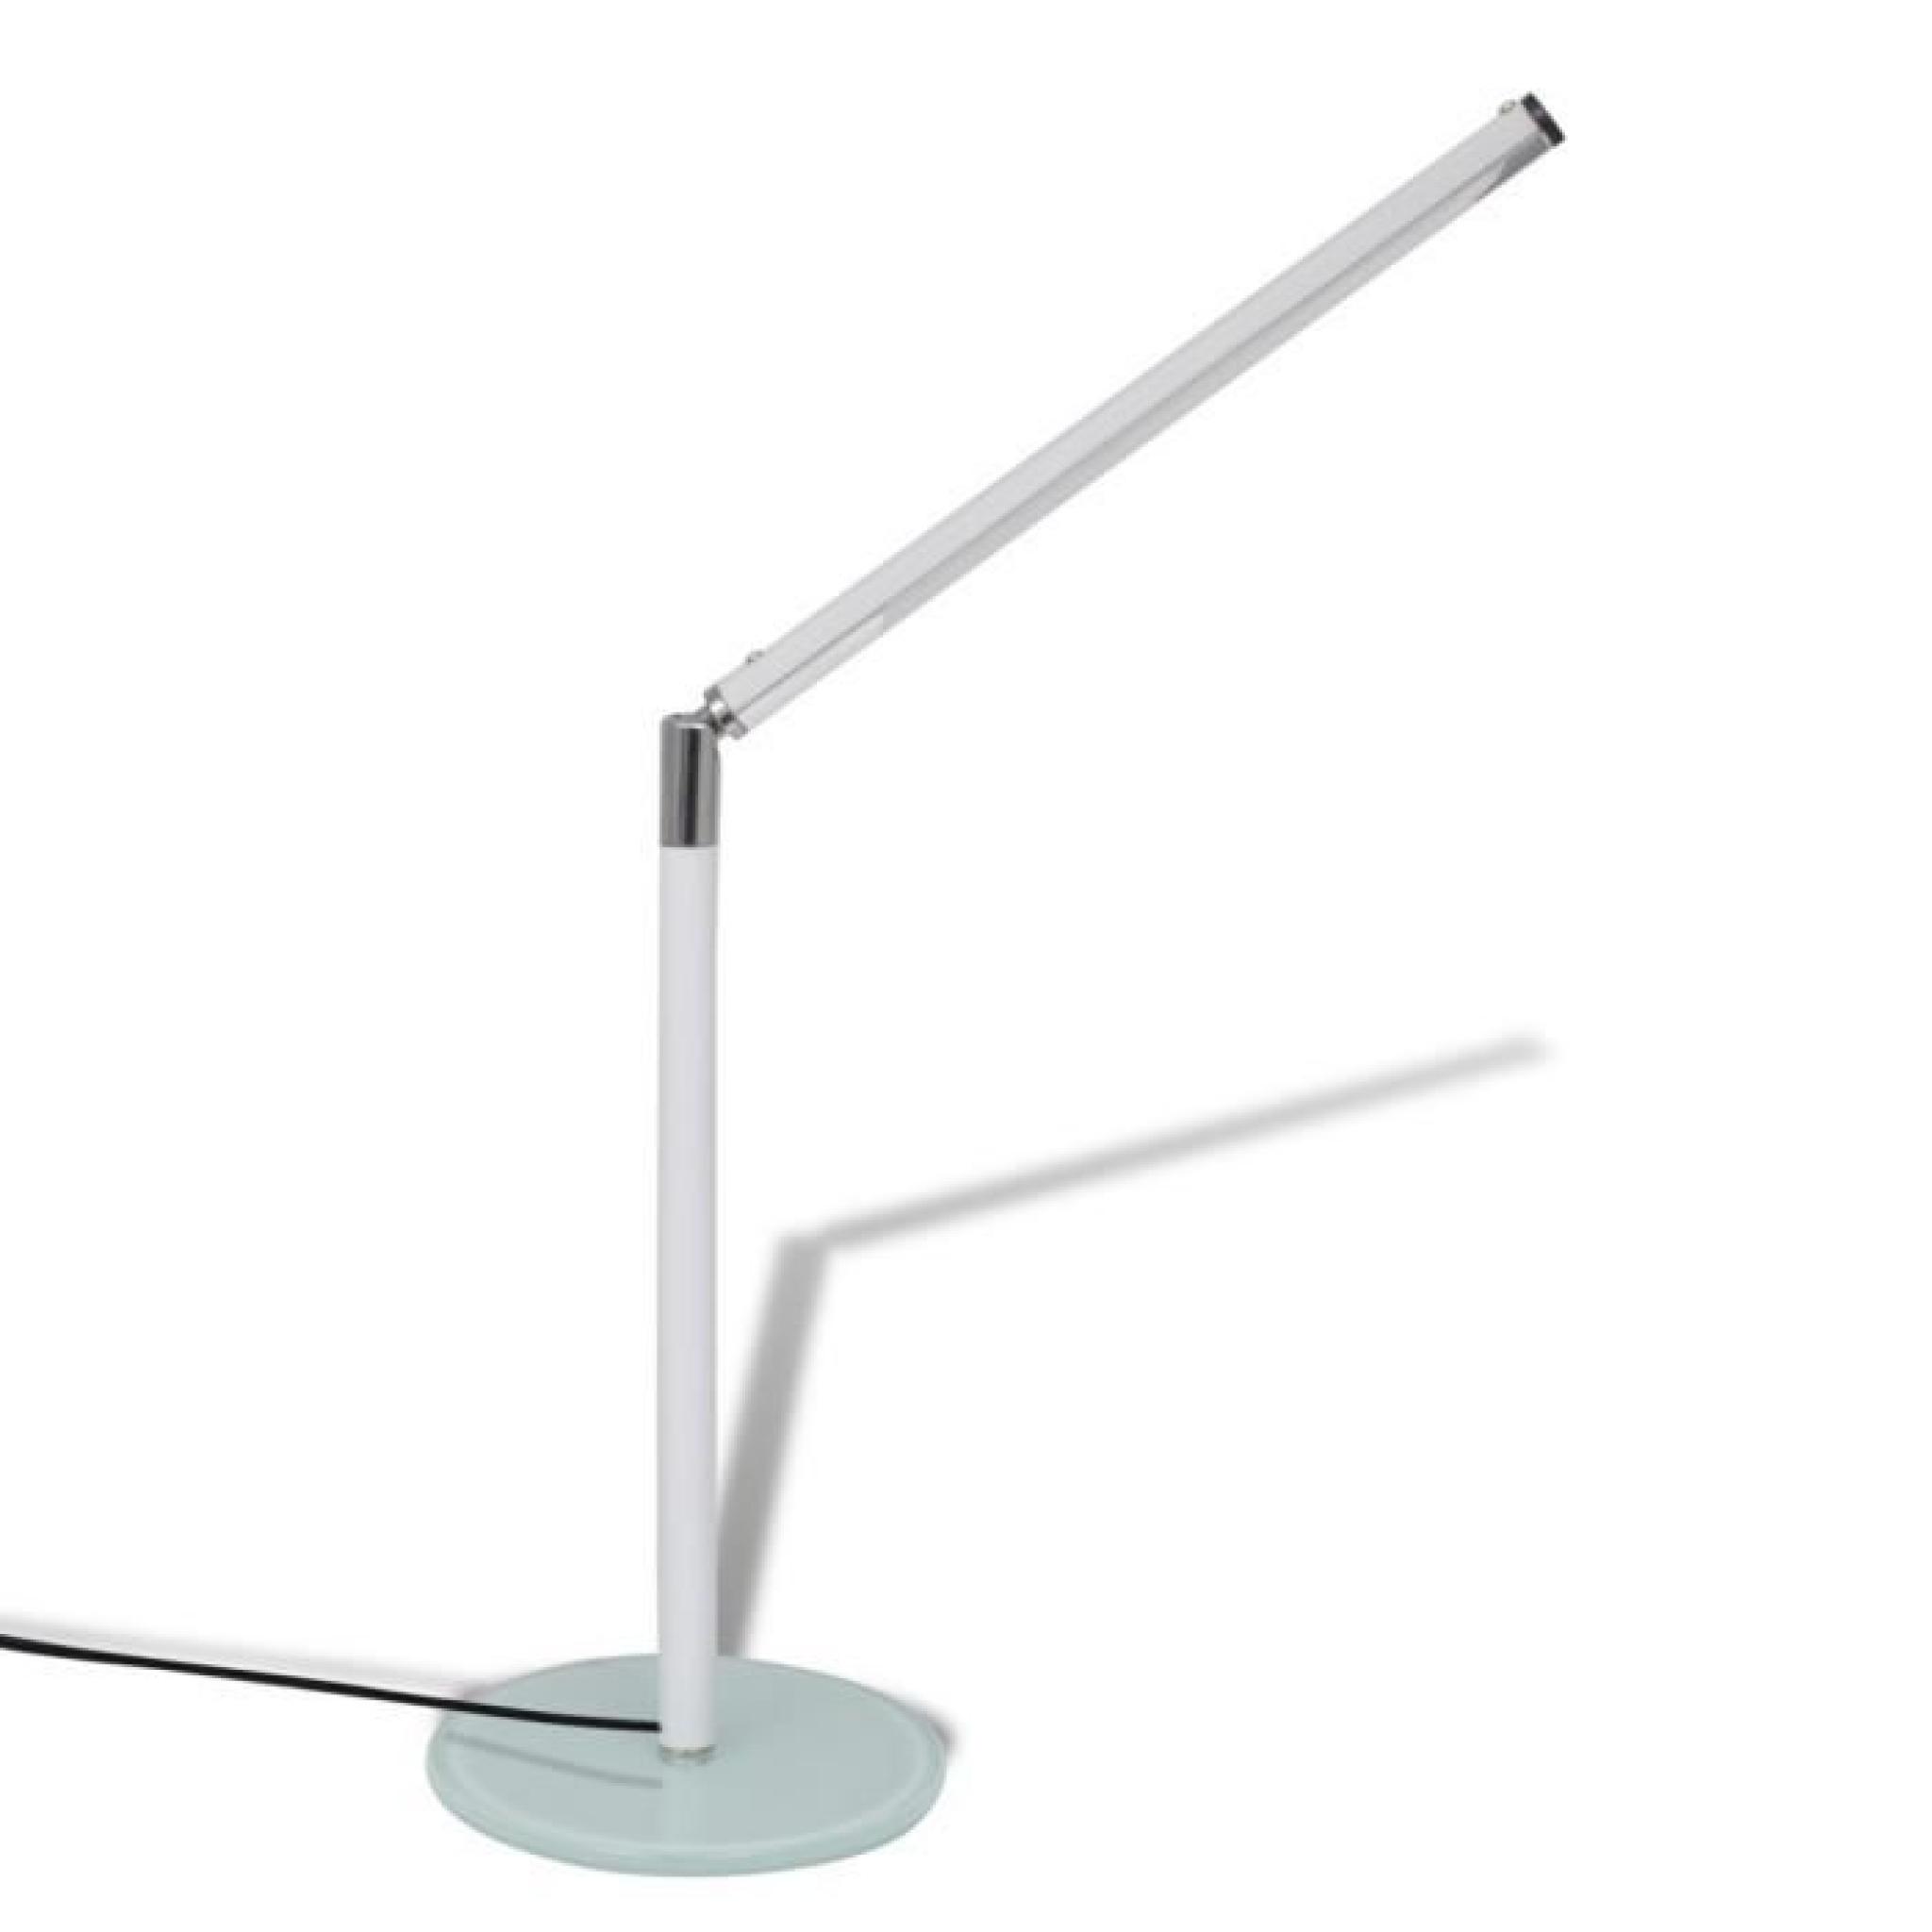 Magnifique Lampe de Table LED Blanche Luminosite ajustable Blanc Froid 4W